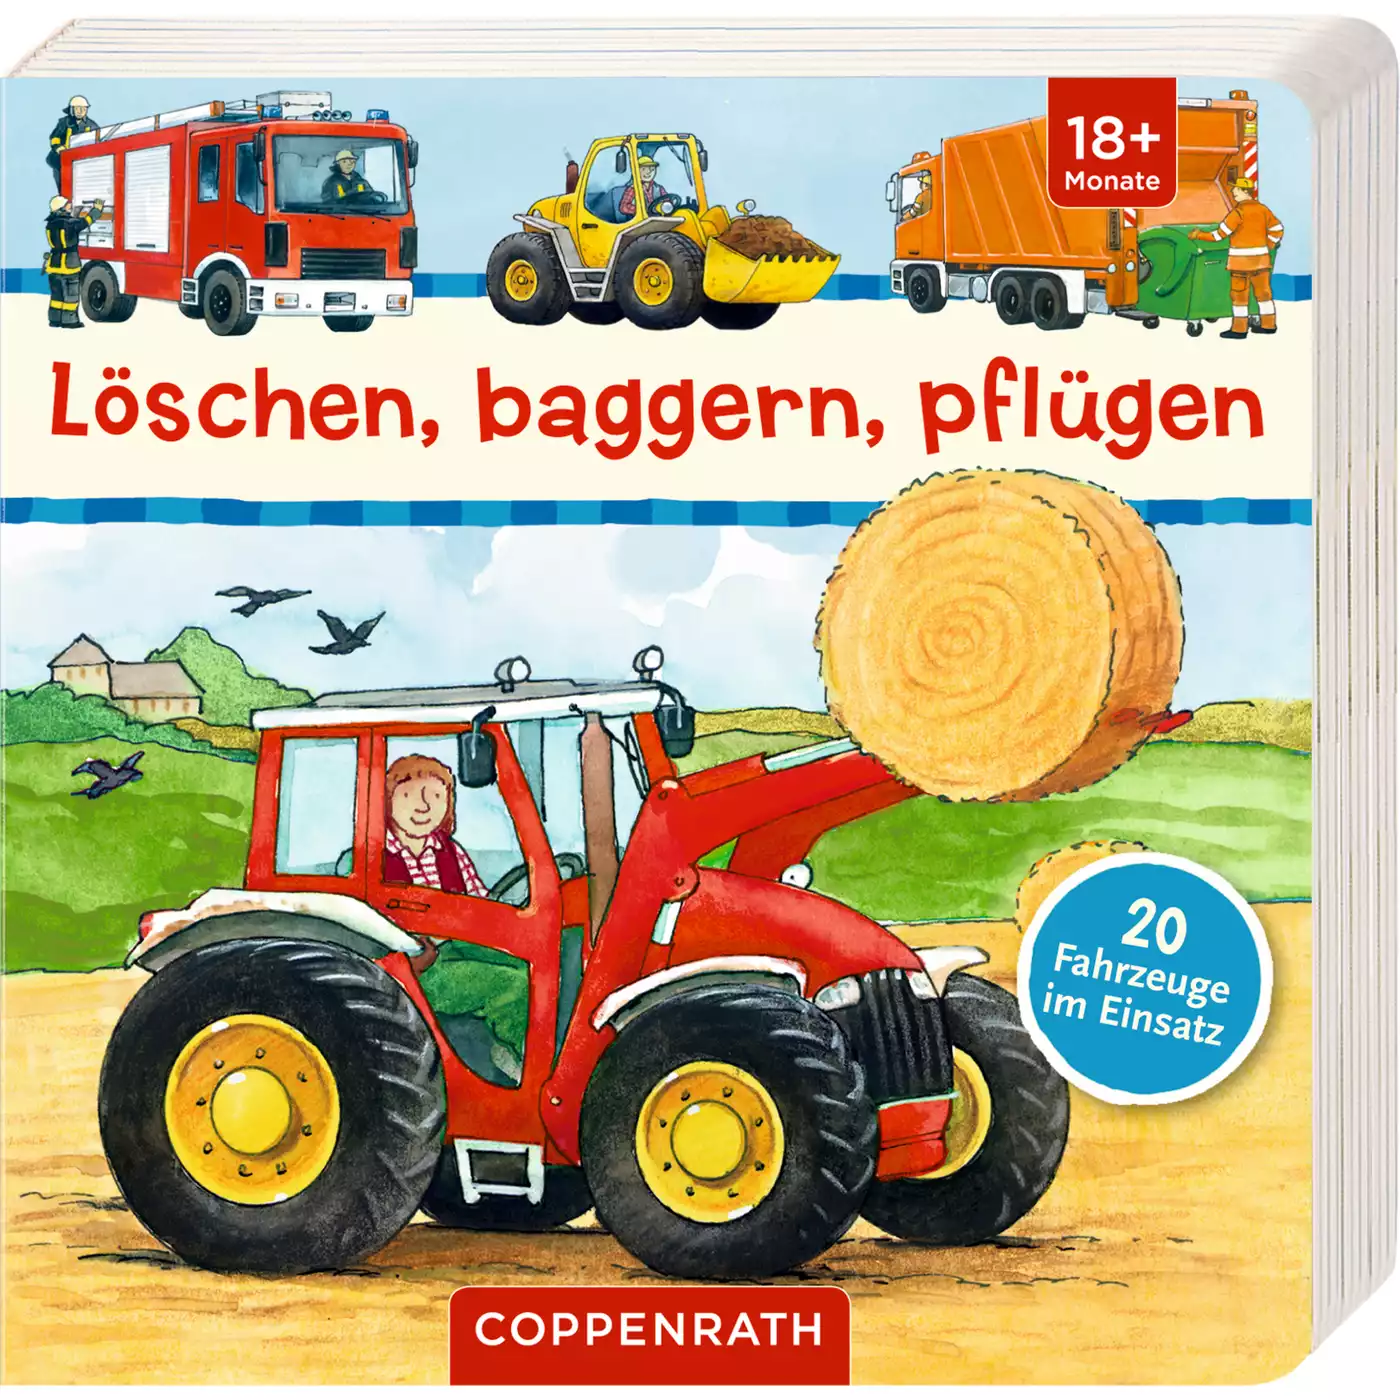 Löschen, baggern, pflügen COPPENRATH 2000566716504 3